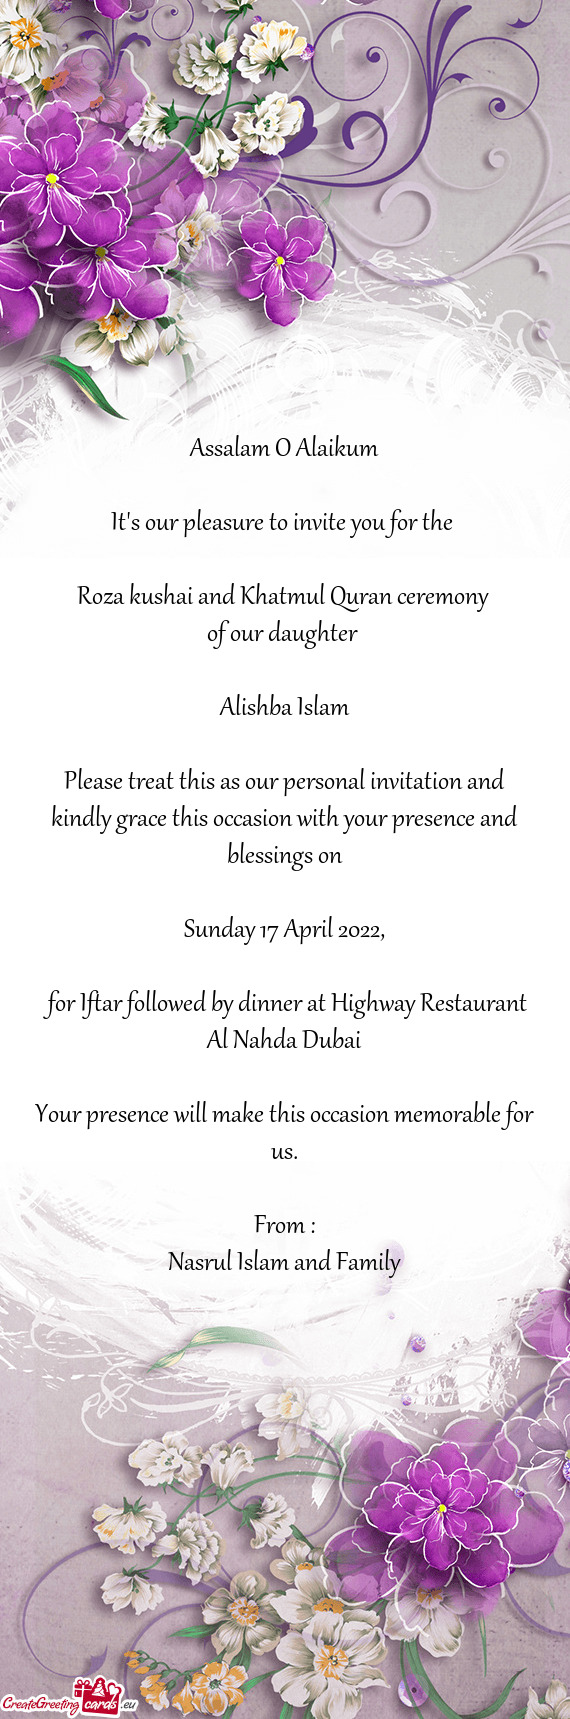 Roza kushai and Khatmul Quran ceremony